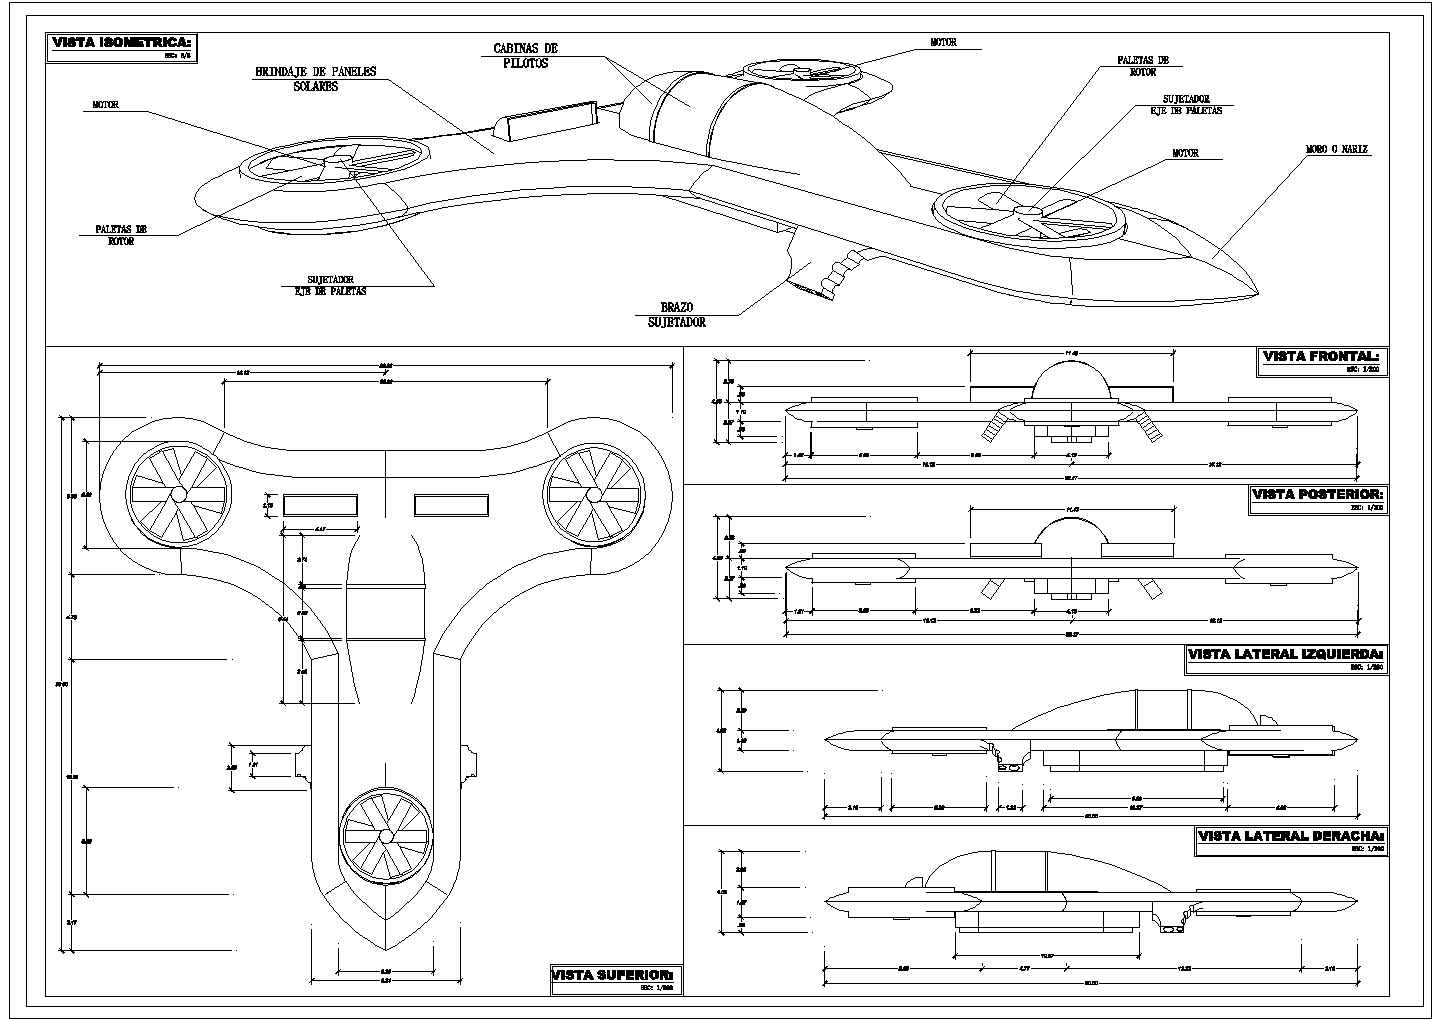 某飞机CAD详细构造设计图纸